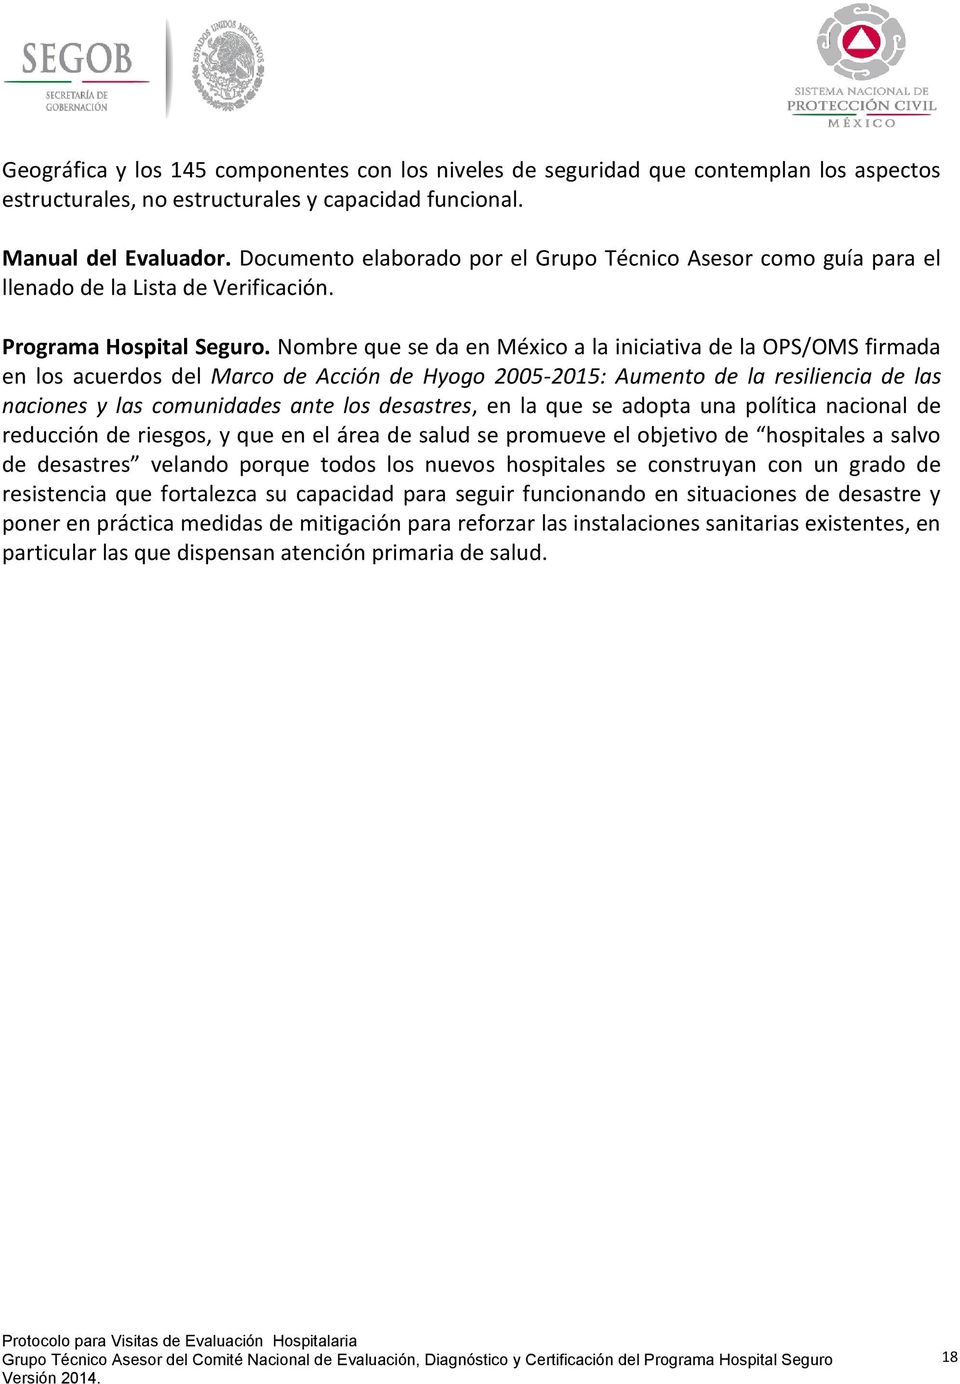 Nombre que se da en México a la iniciativa de la OPS/OMS firmada en los acuerdos del Marco de Acción de Hyogo 2005-2015: Aumento de la resiliencia de las naciones y las comunidades ante los